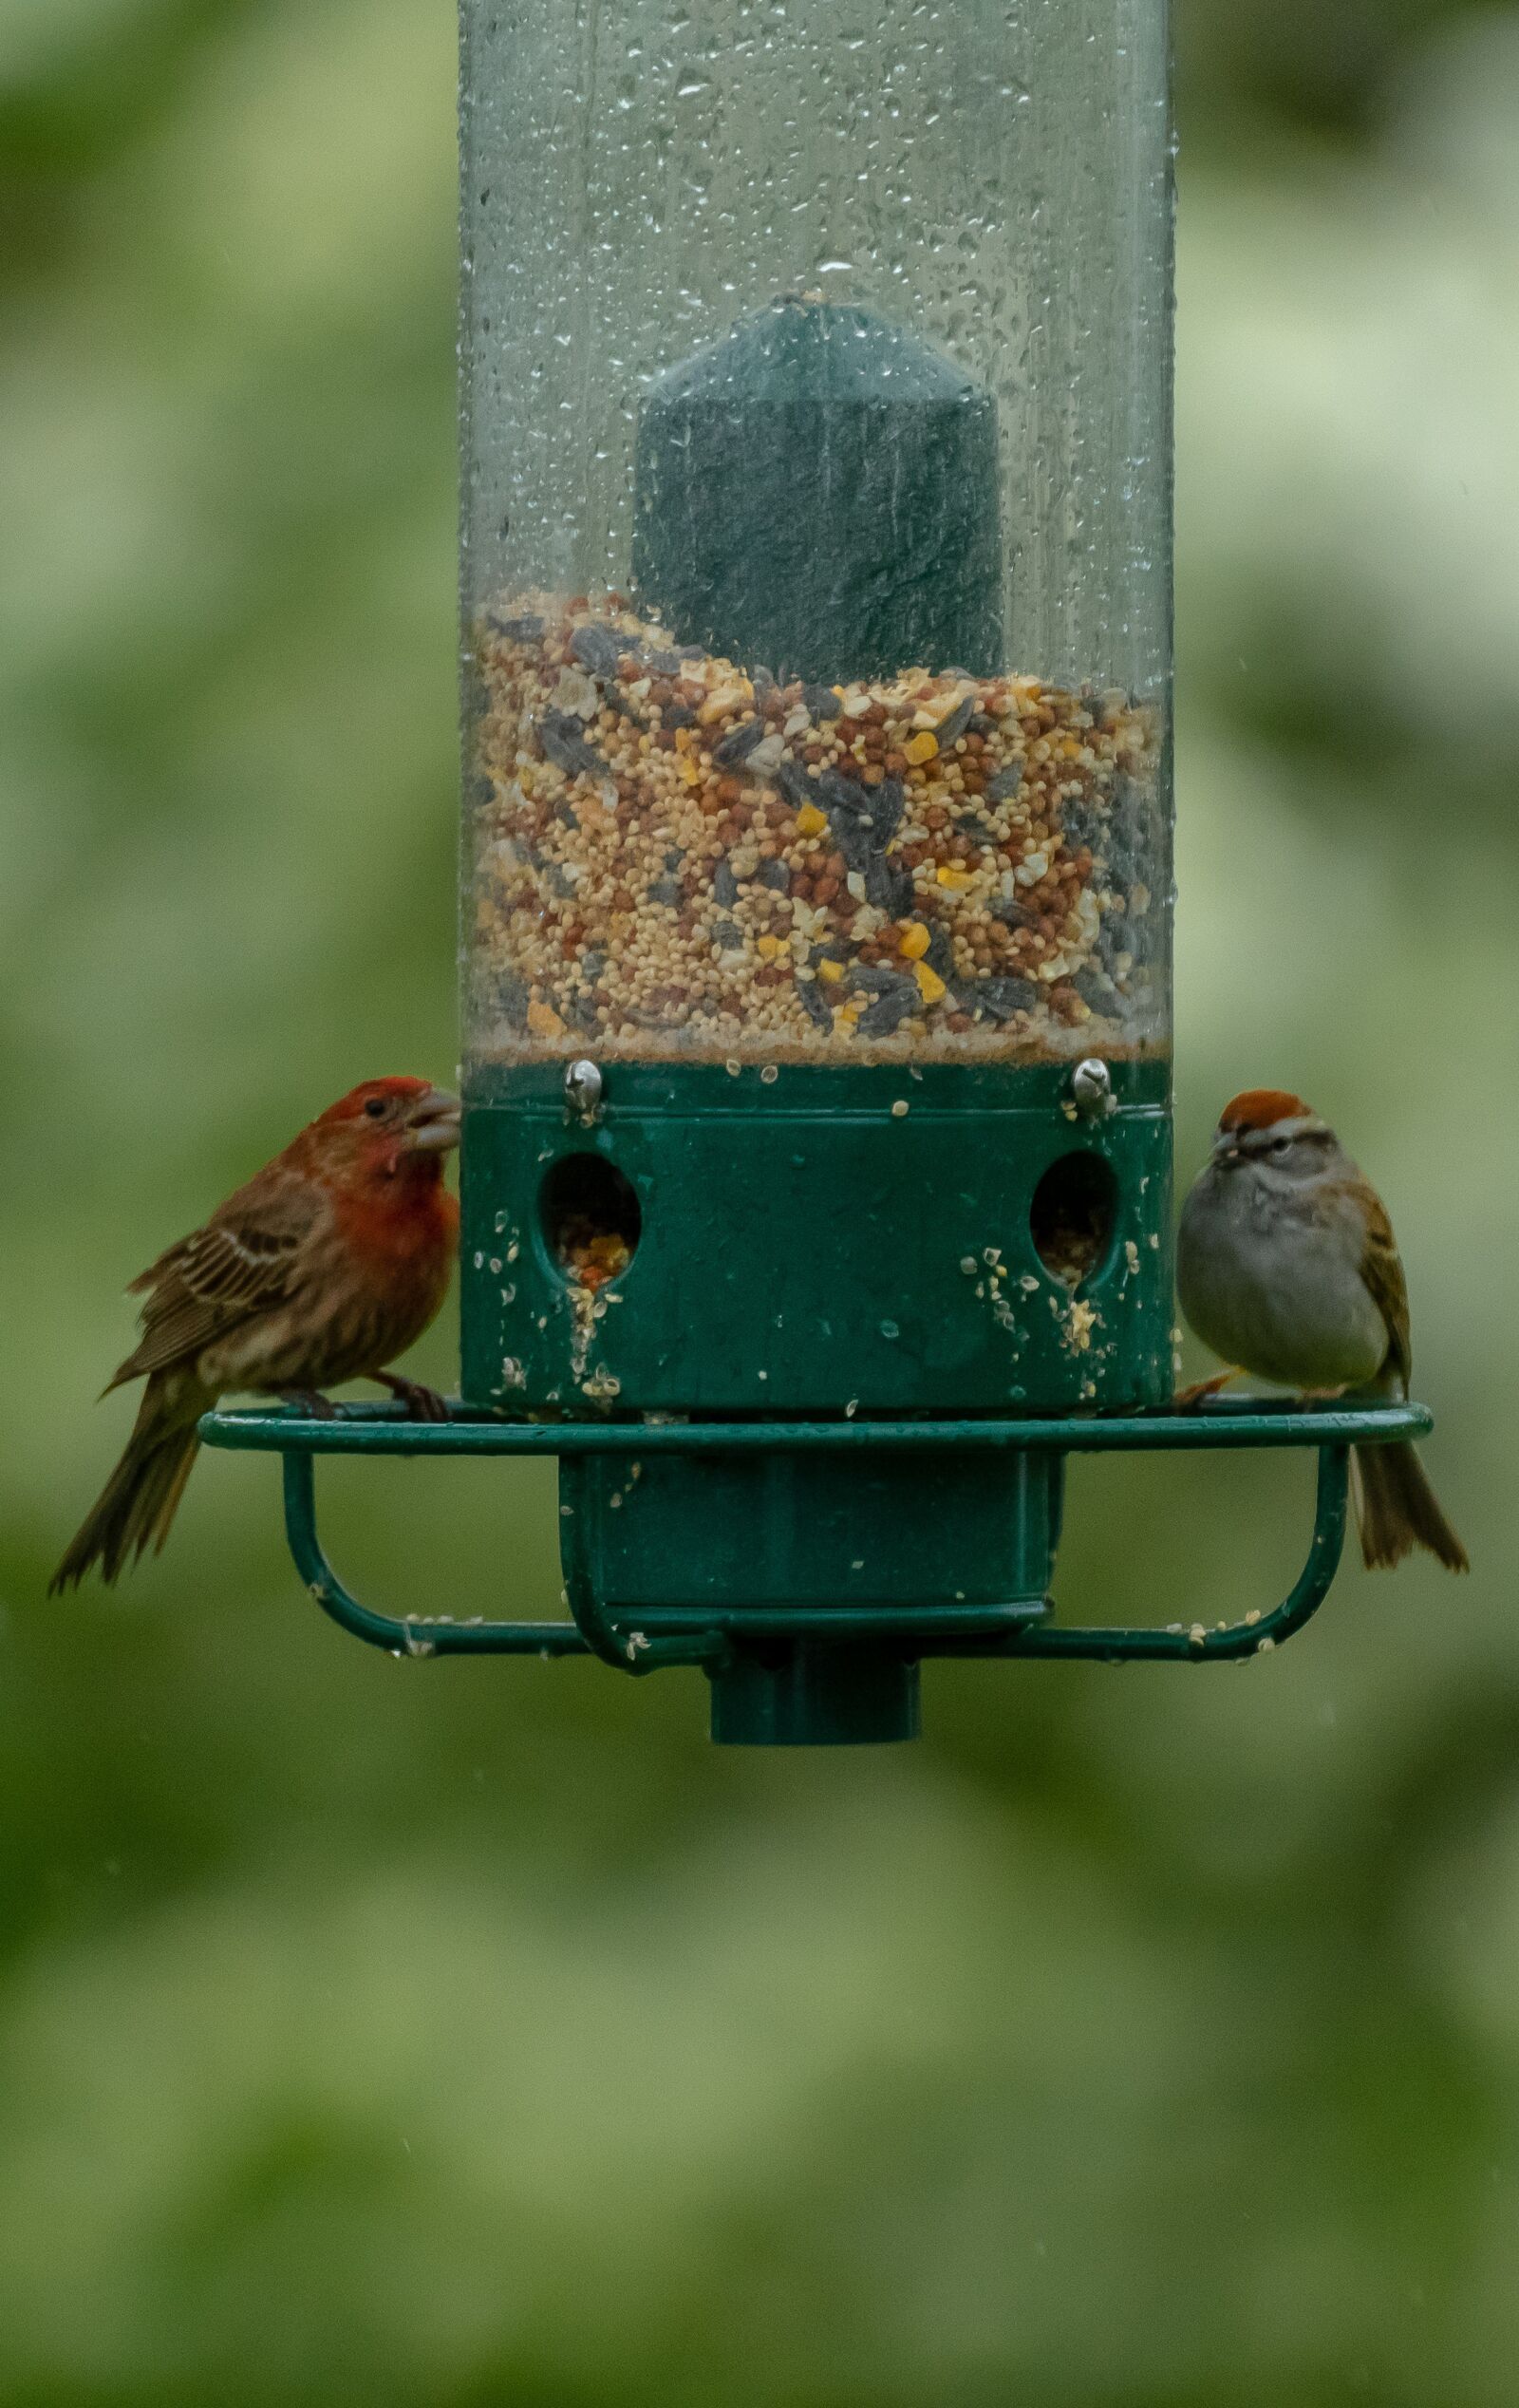 Nikon D500 sample photo. Birds, bird feeder, feeder photography